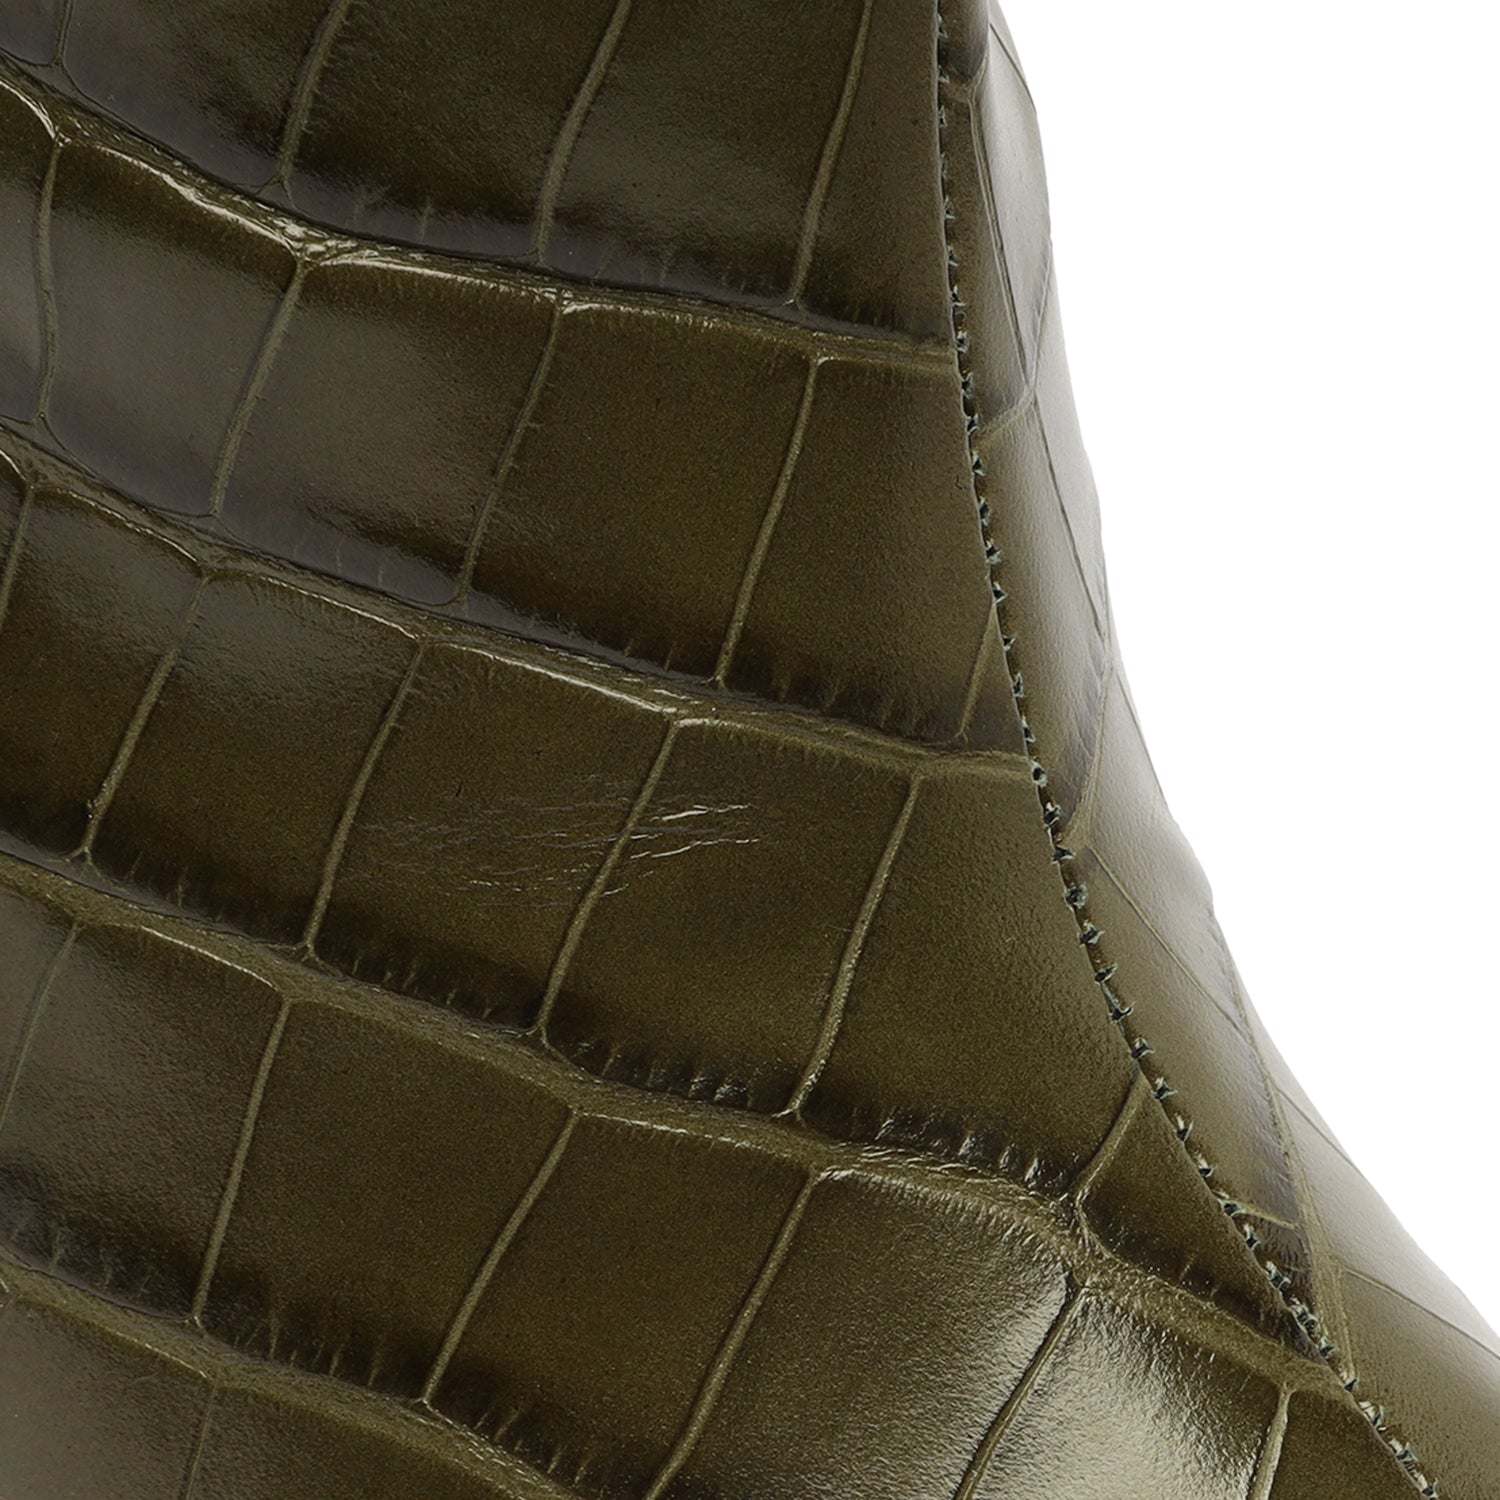 Maryana Block Crocodile-Embossed Leather Boot Military Green Crocodile-Embossed Leather